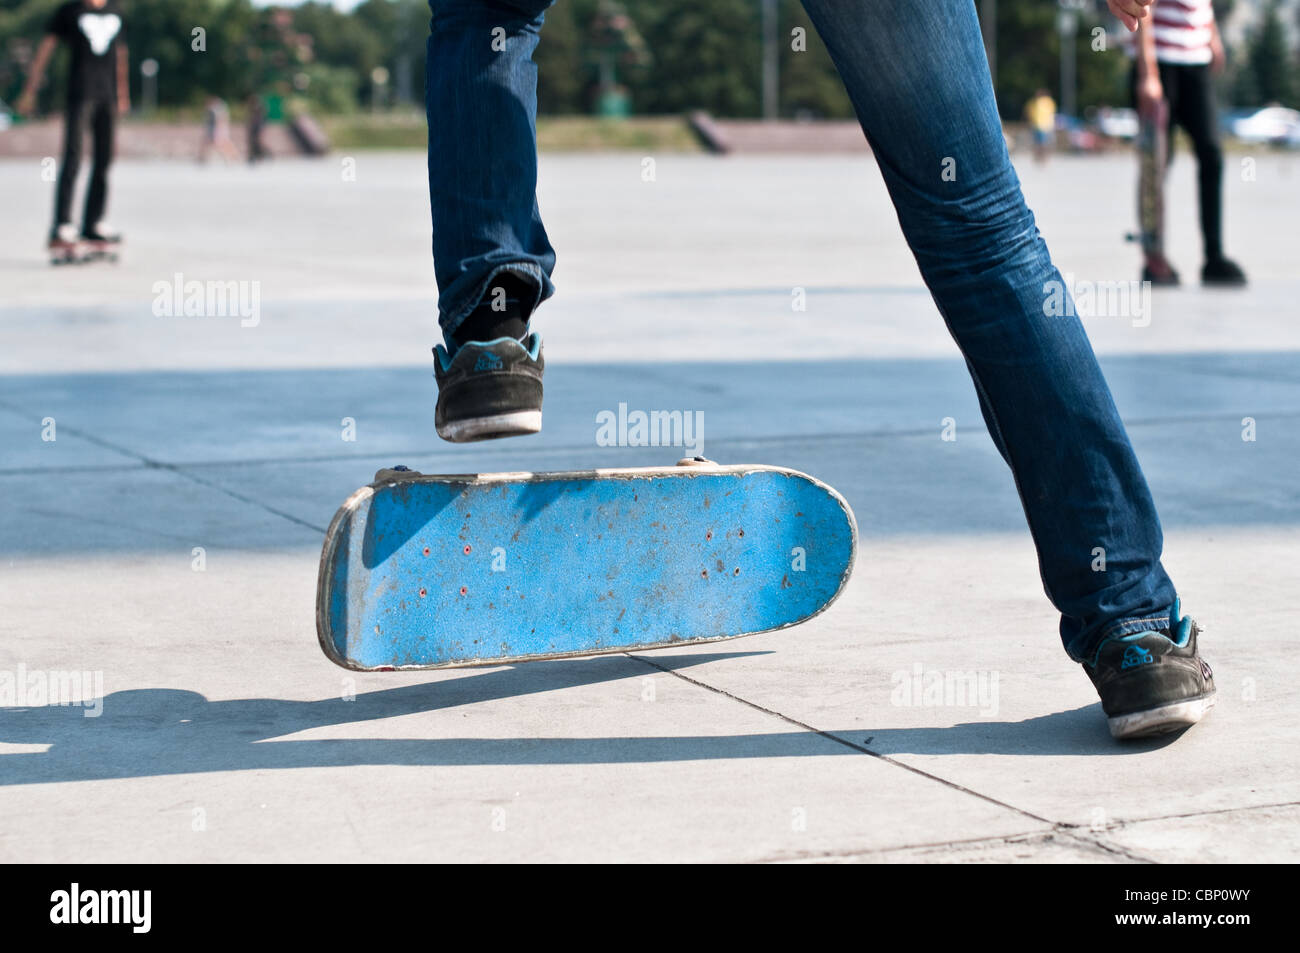 junge Skater segelnder Stunt auf seinem blauen Brett Stockfoto